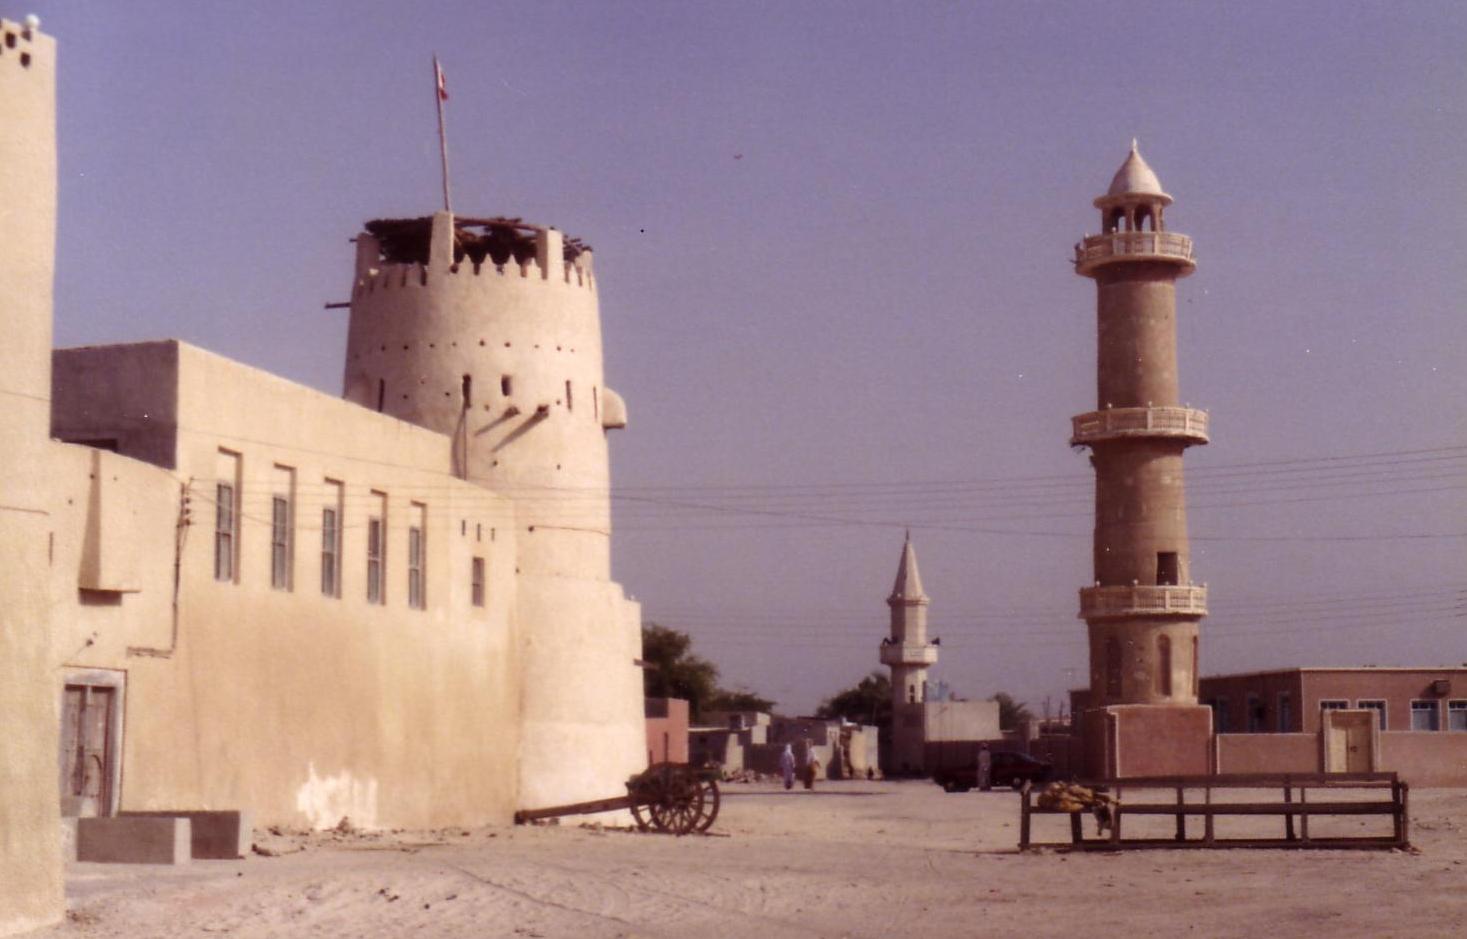 Umm Al Quaiwain fort and mosque